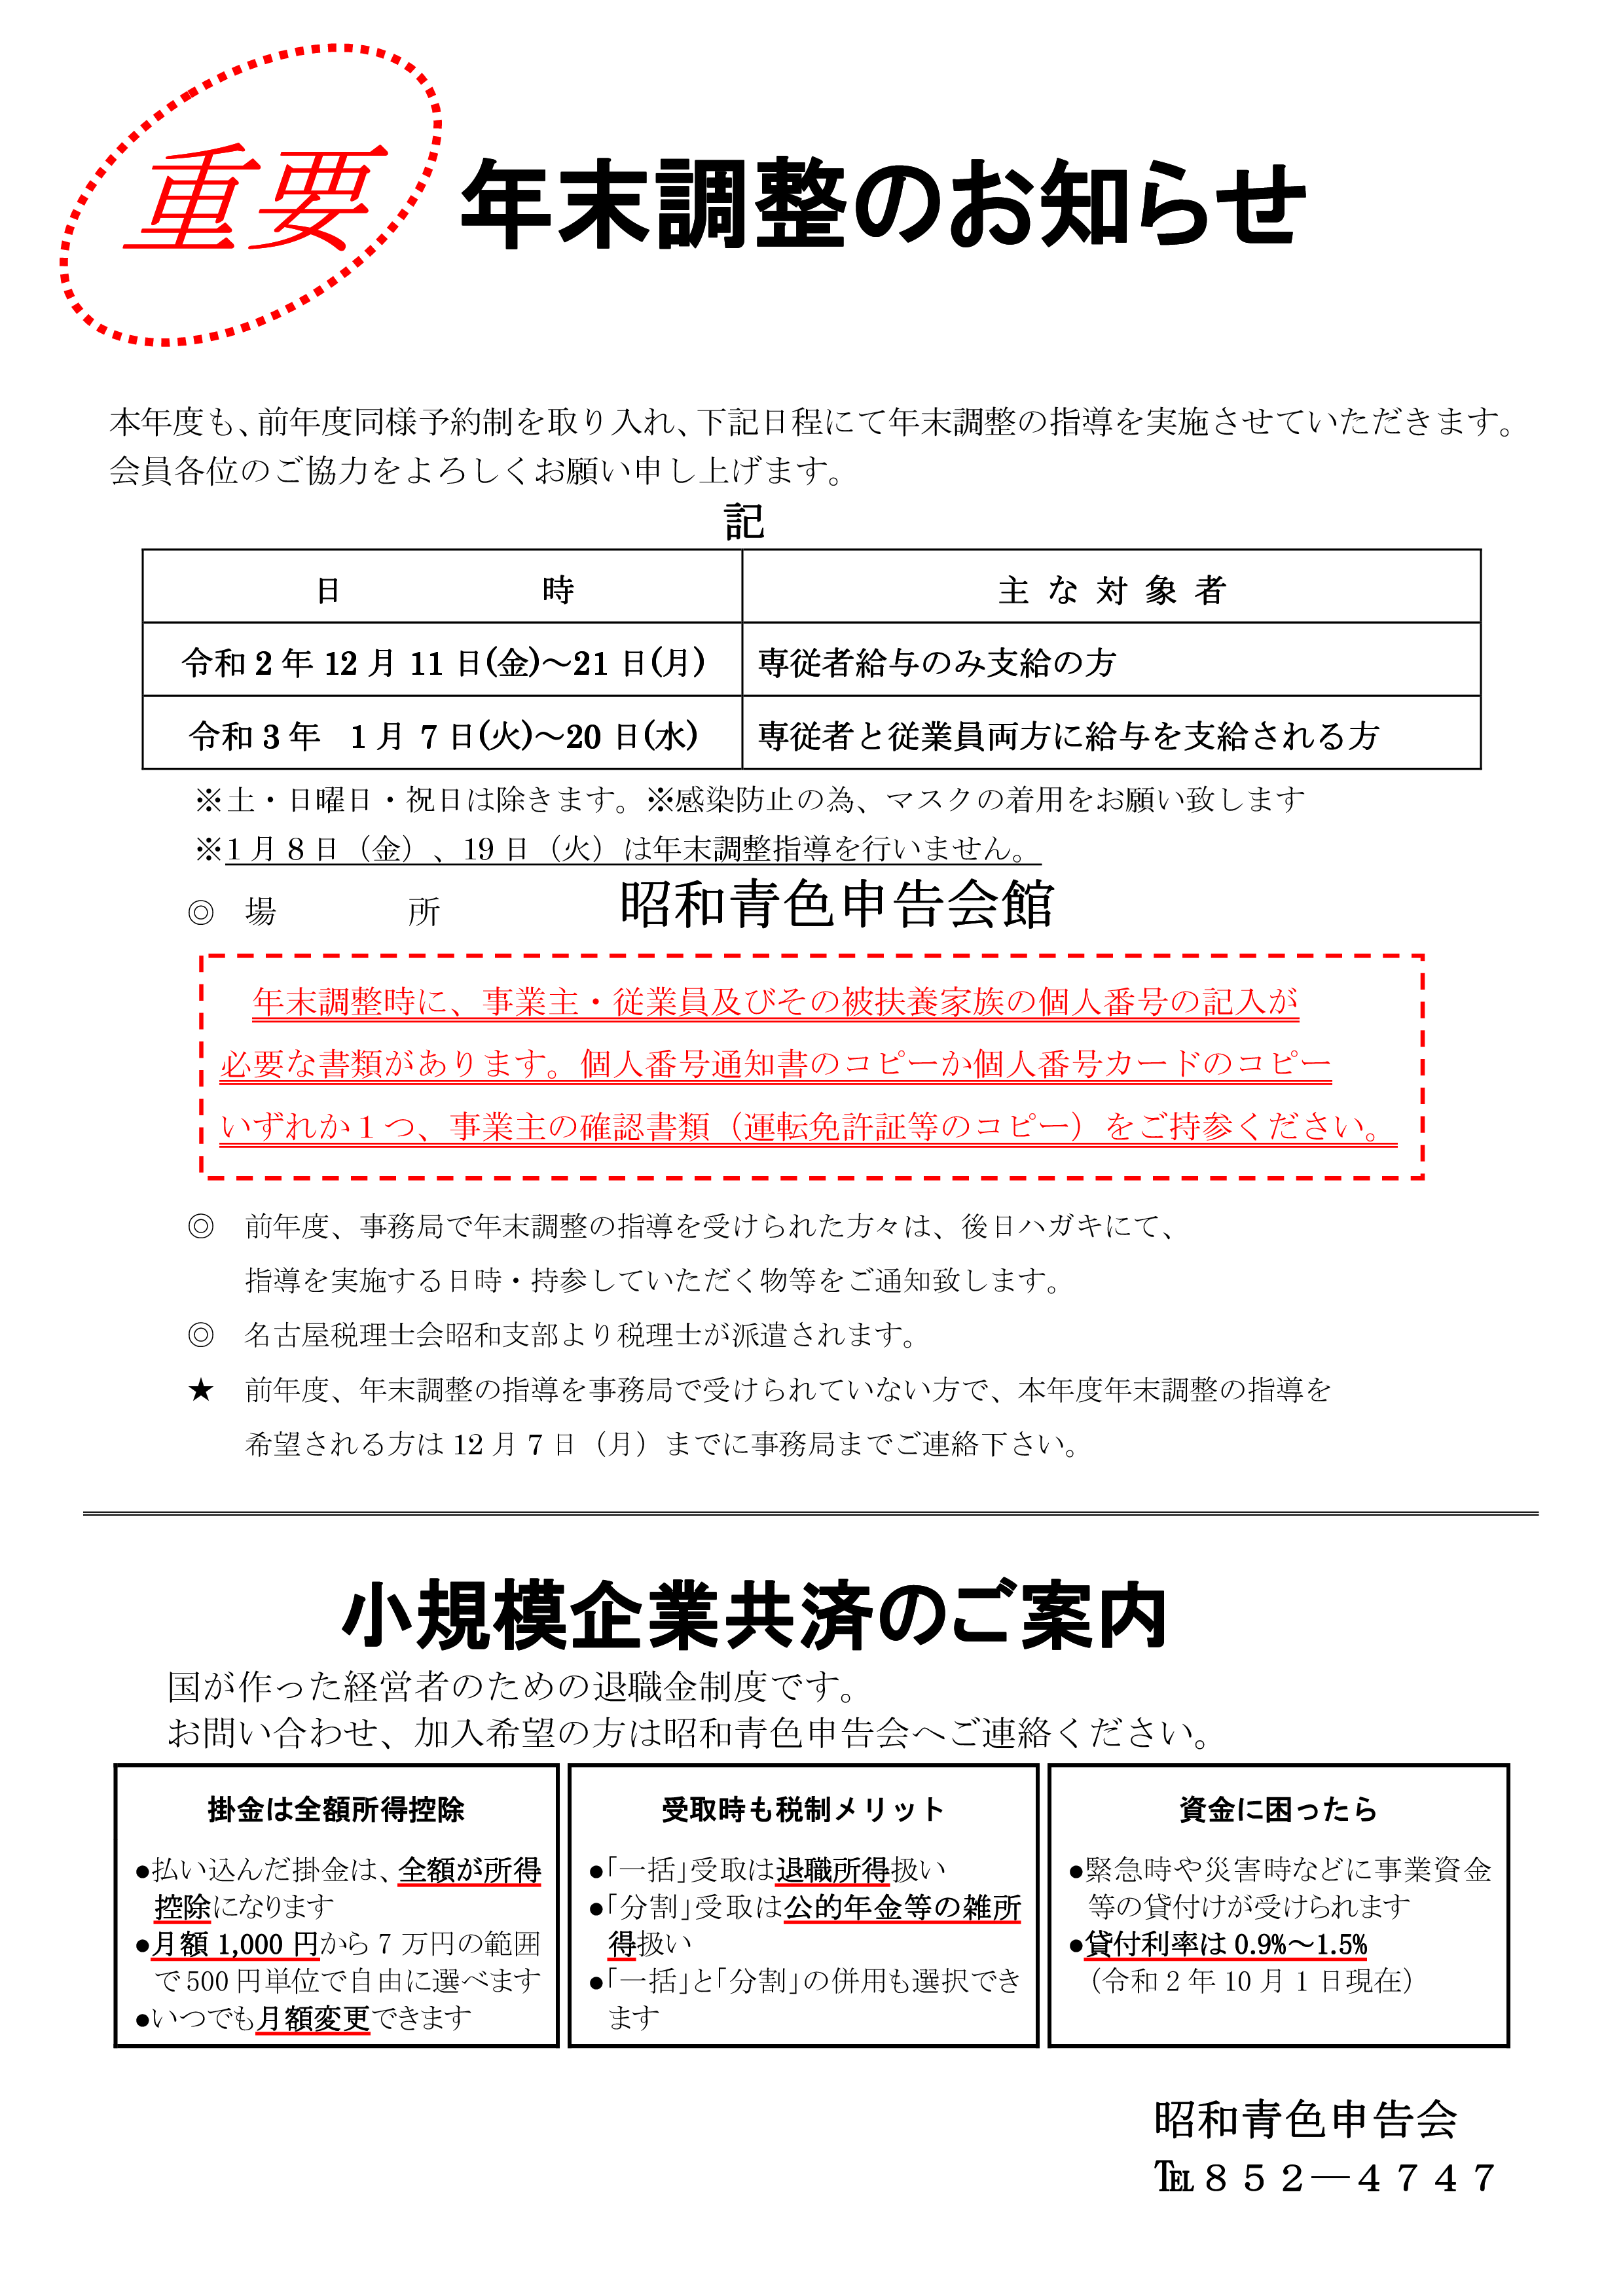 年末調整のお知らせ（令和1年12月12日～令和2年1月17日） – 名古屋の昭和青色申告会メンバーサイト